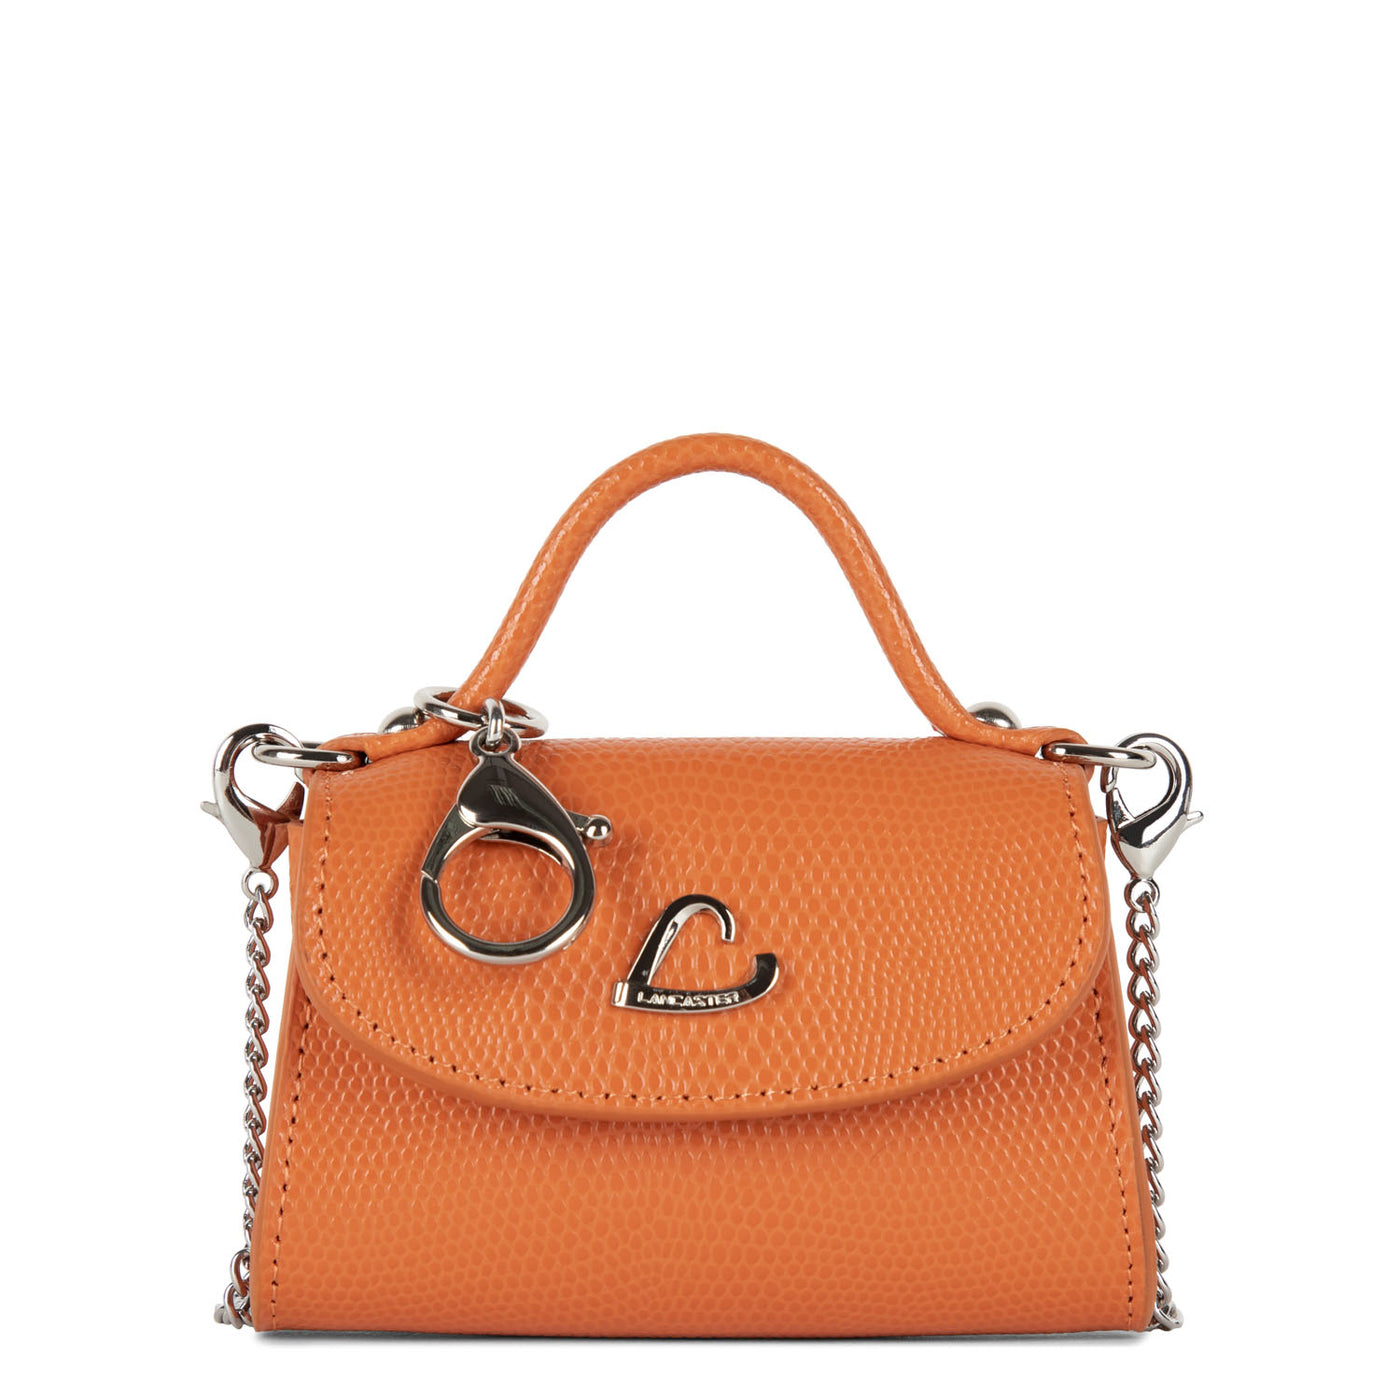 mini porte-monnaie - lucertola #couleur_orange